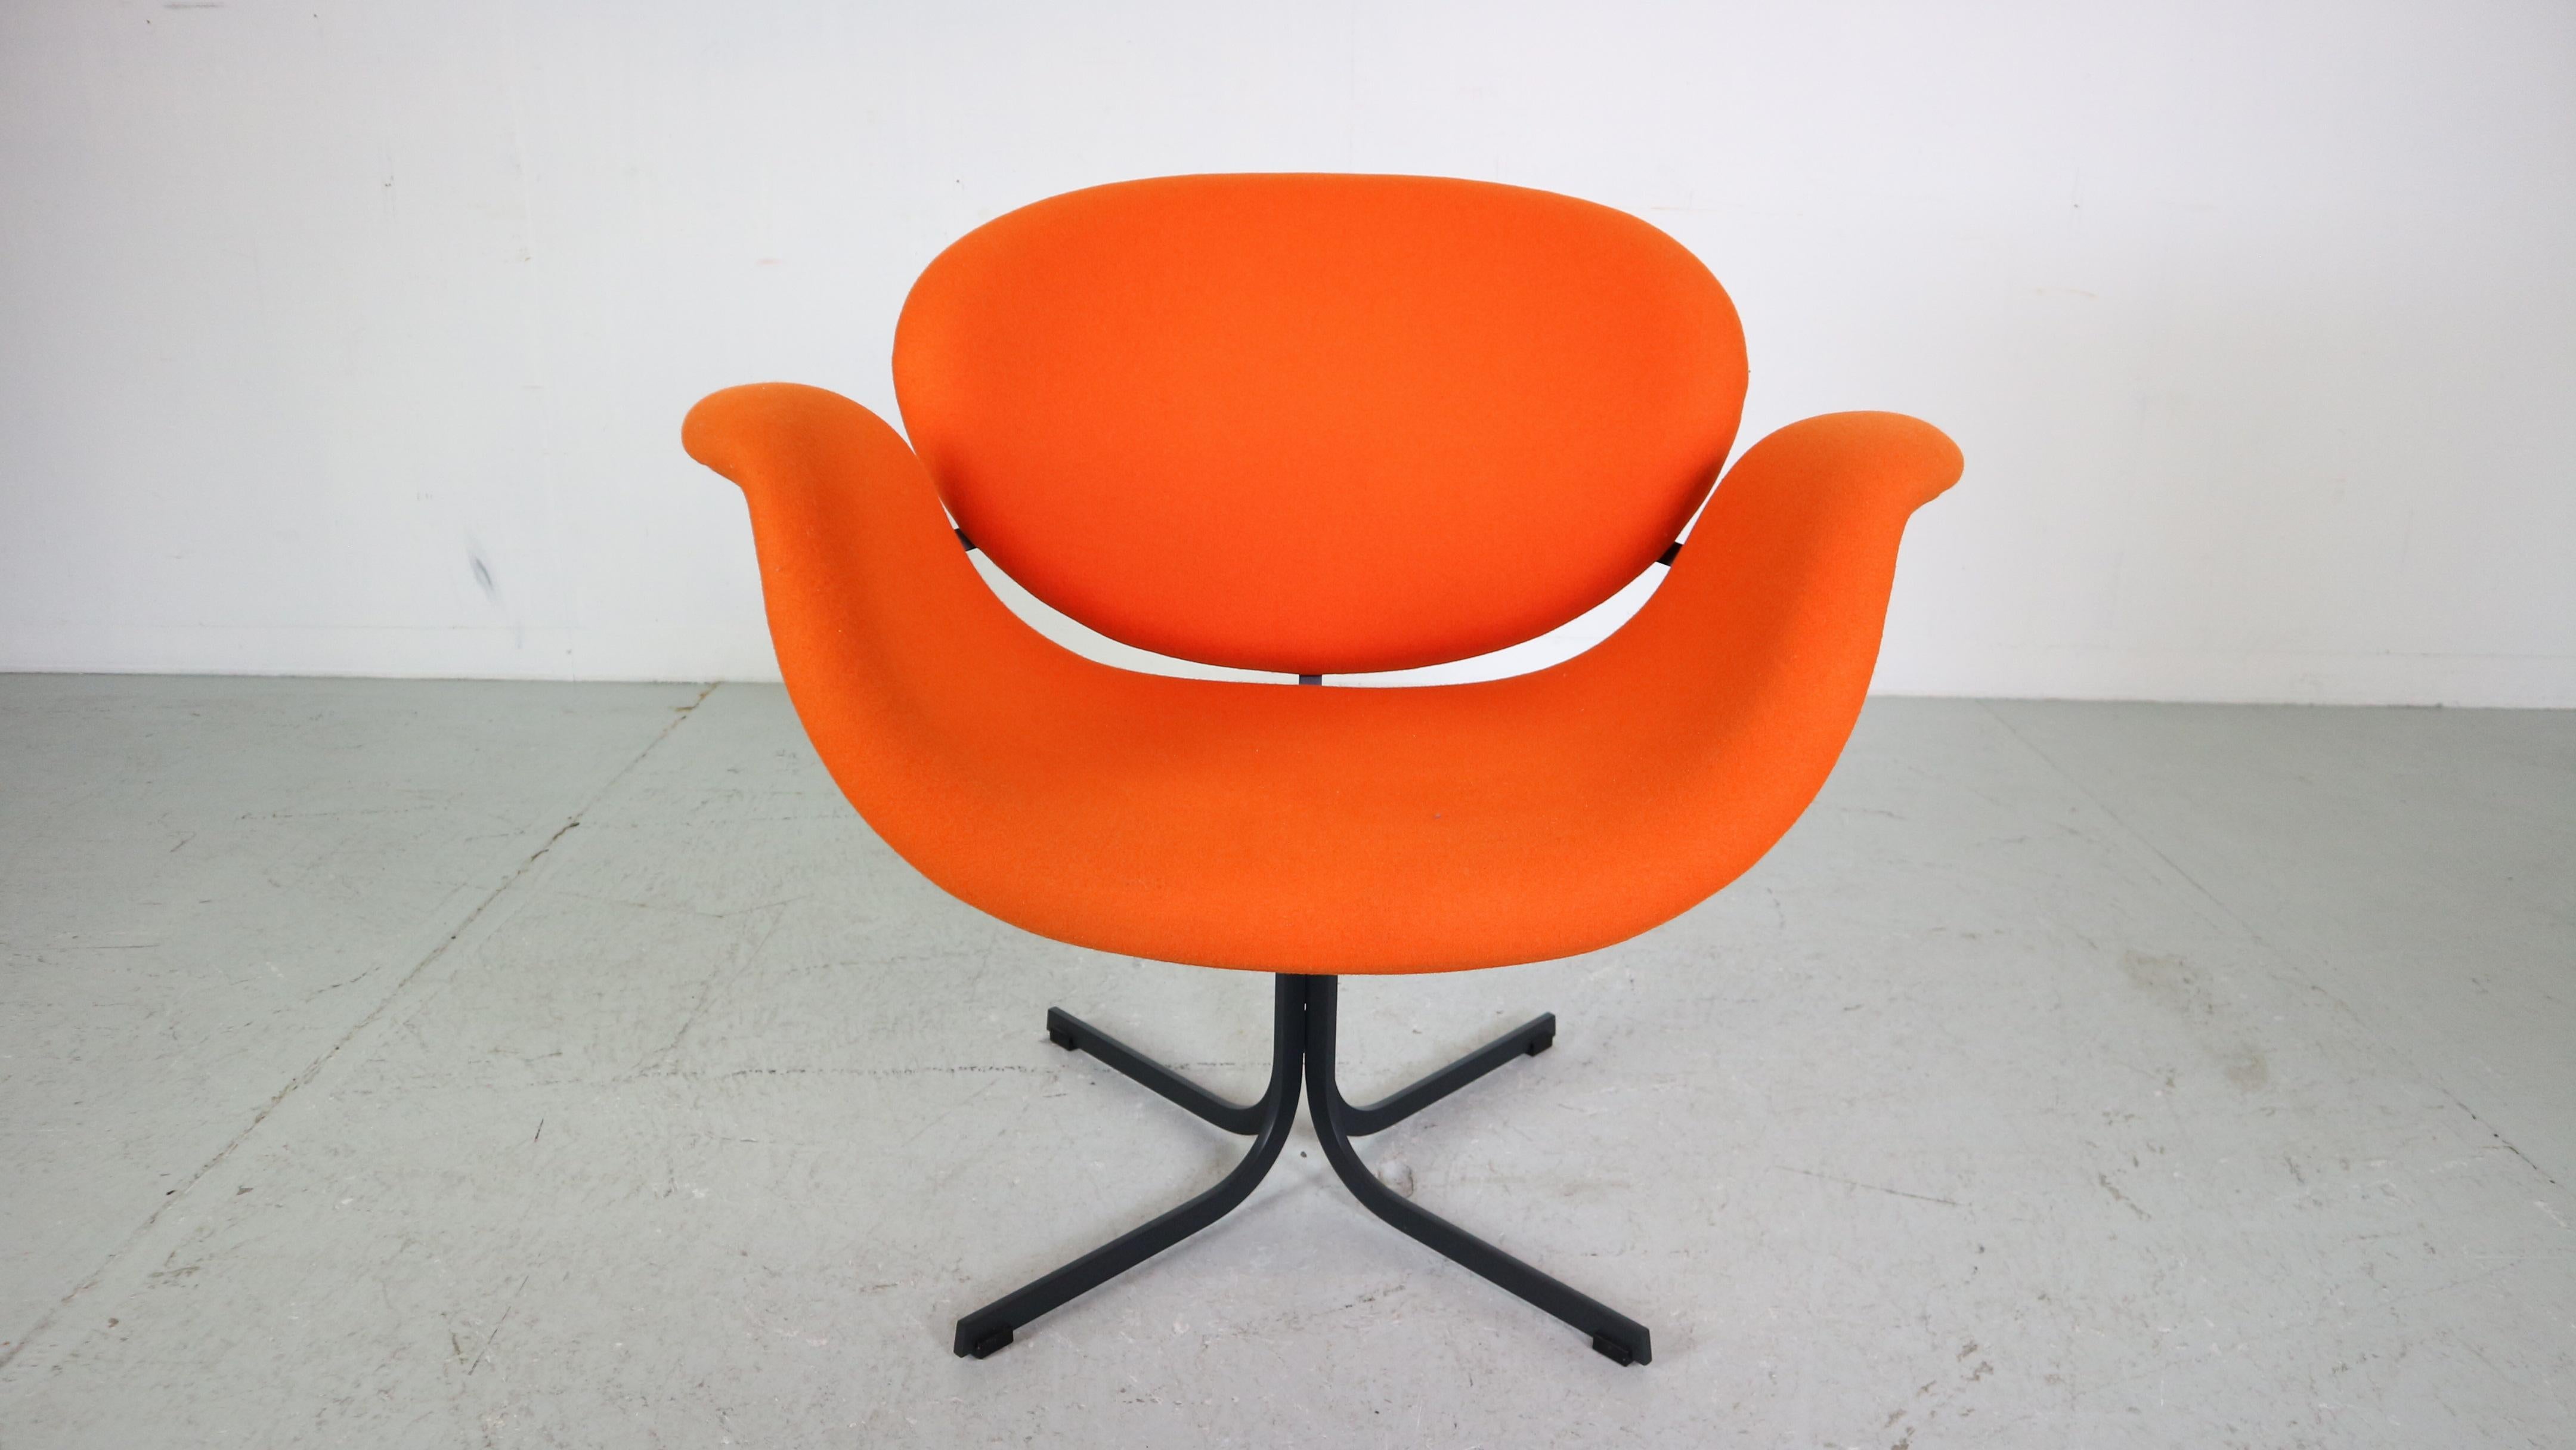 Le Tulip Midi a longtemps été le membre manquant de la famille Tulip. Le fauteuil a été conçu par Pierre Paulin en 1960 et complète aujourd'hui la série Tulipe pour Artifort. Par ses dimensions, ce fauteuil midsize est l'équilibre parfait entre la